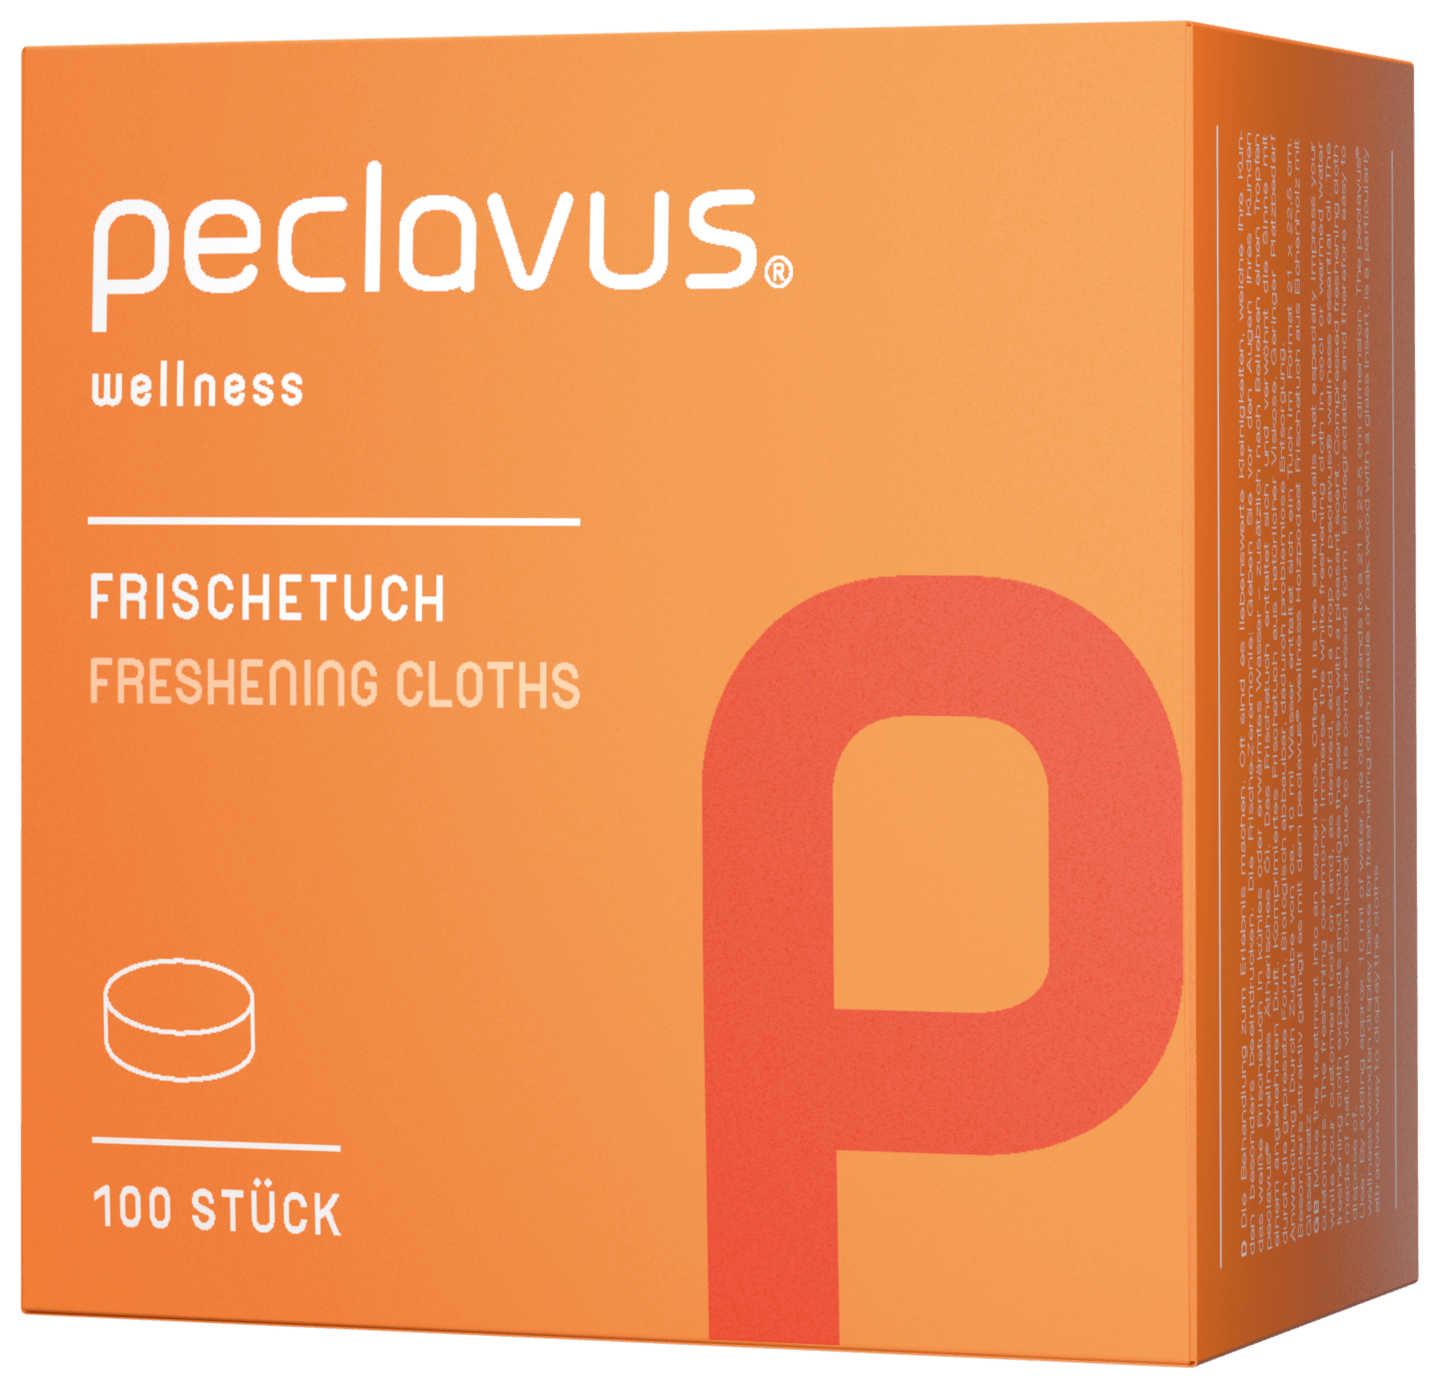 peclavus - Frischetuch